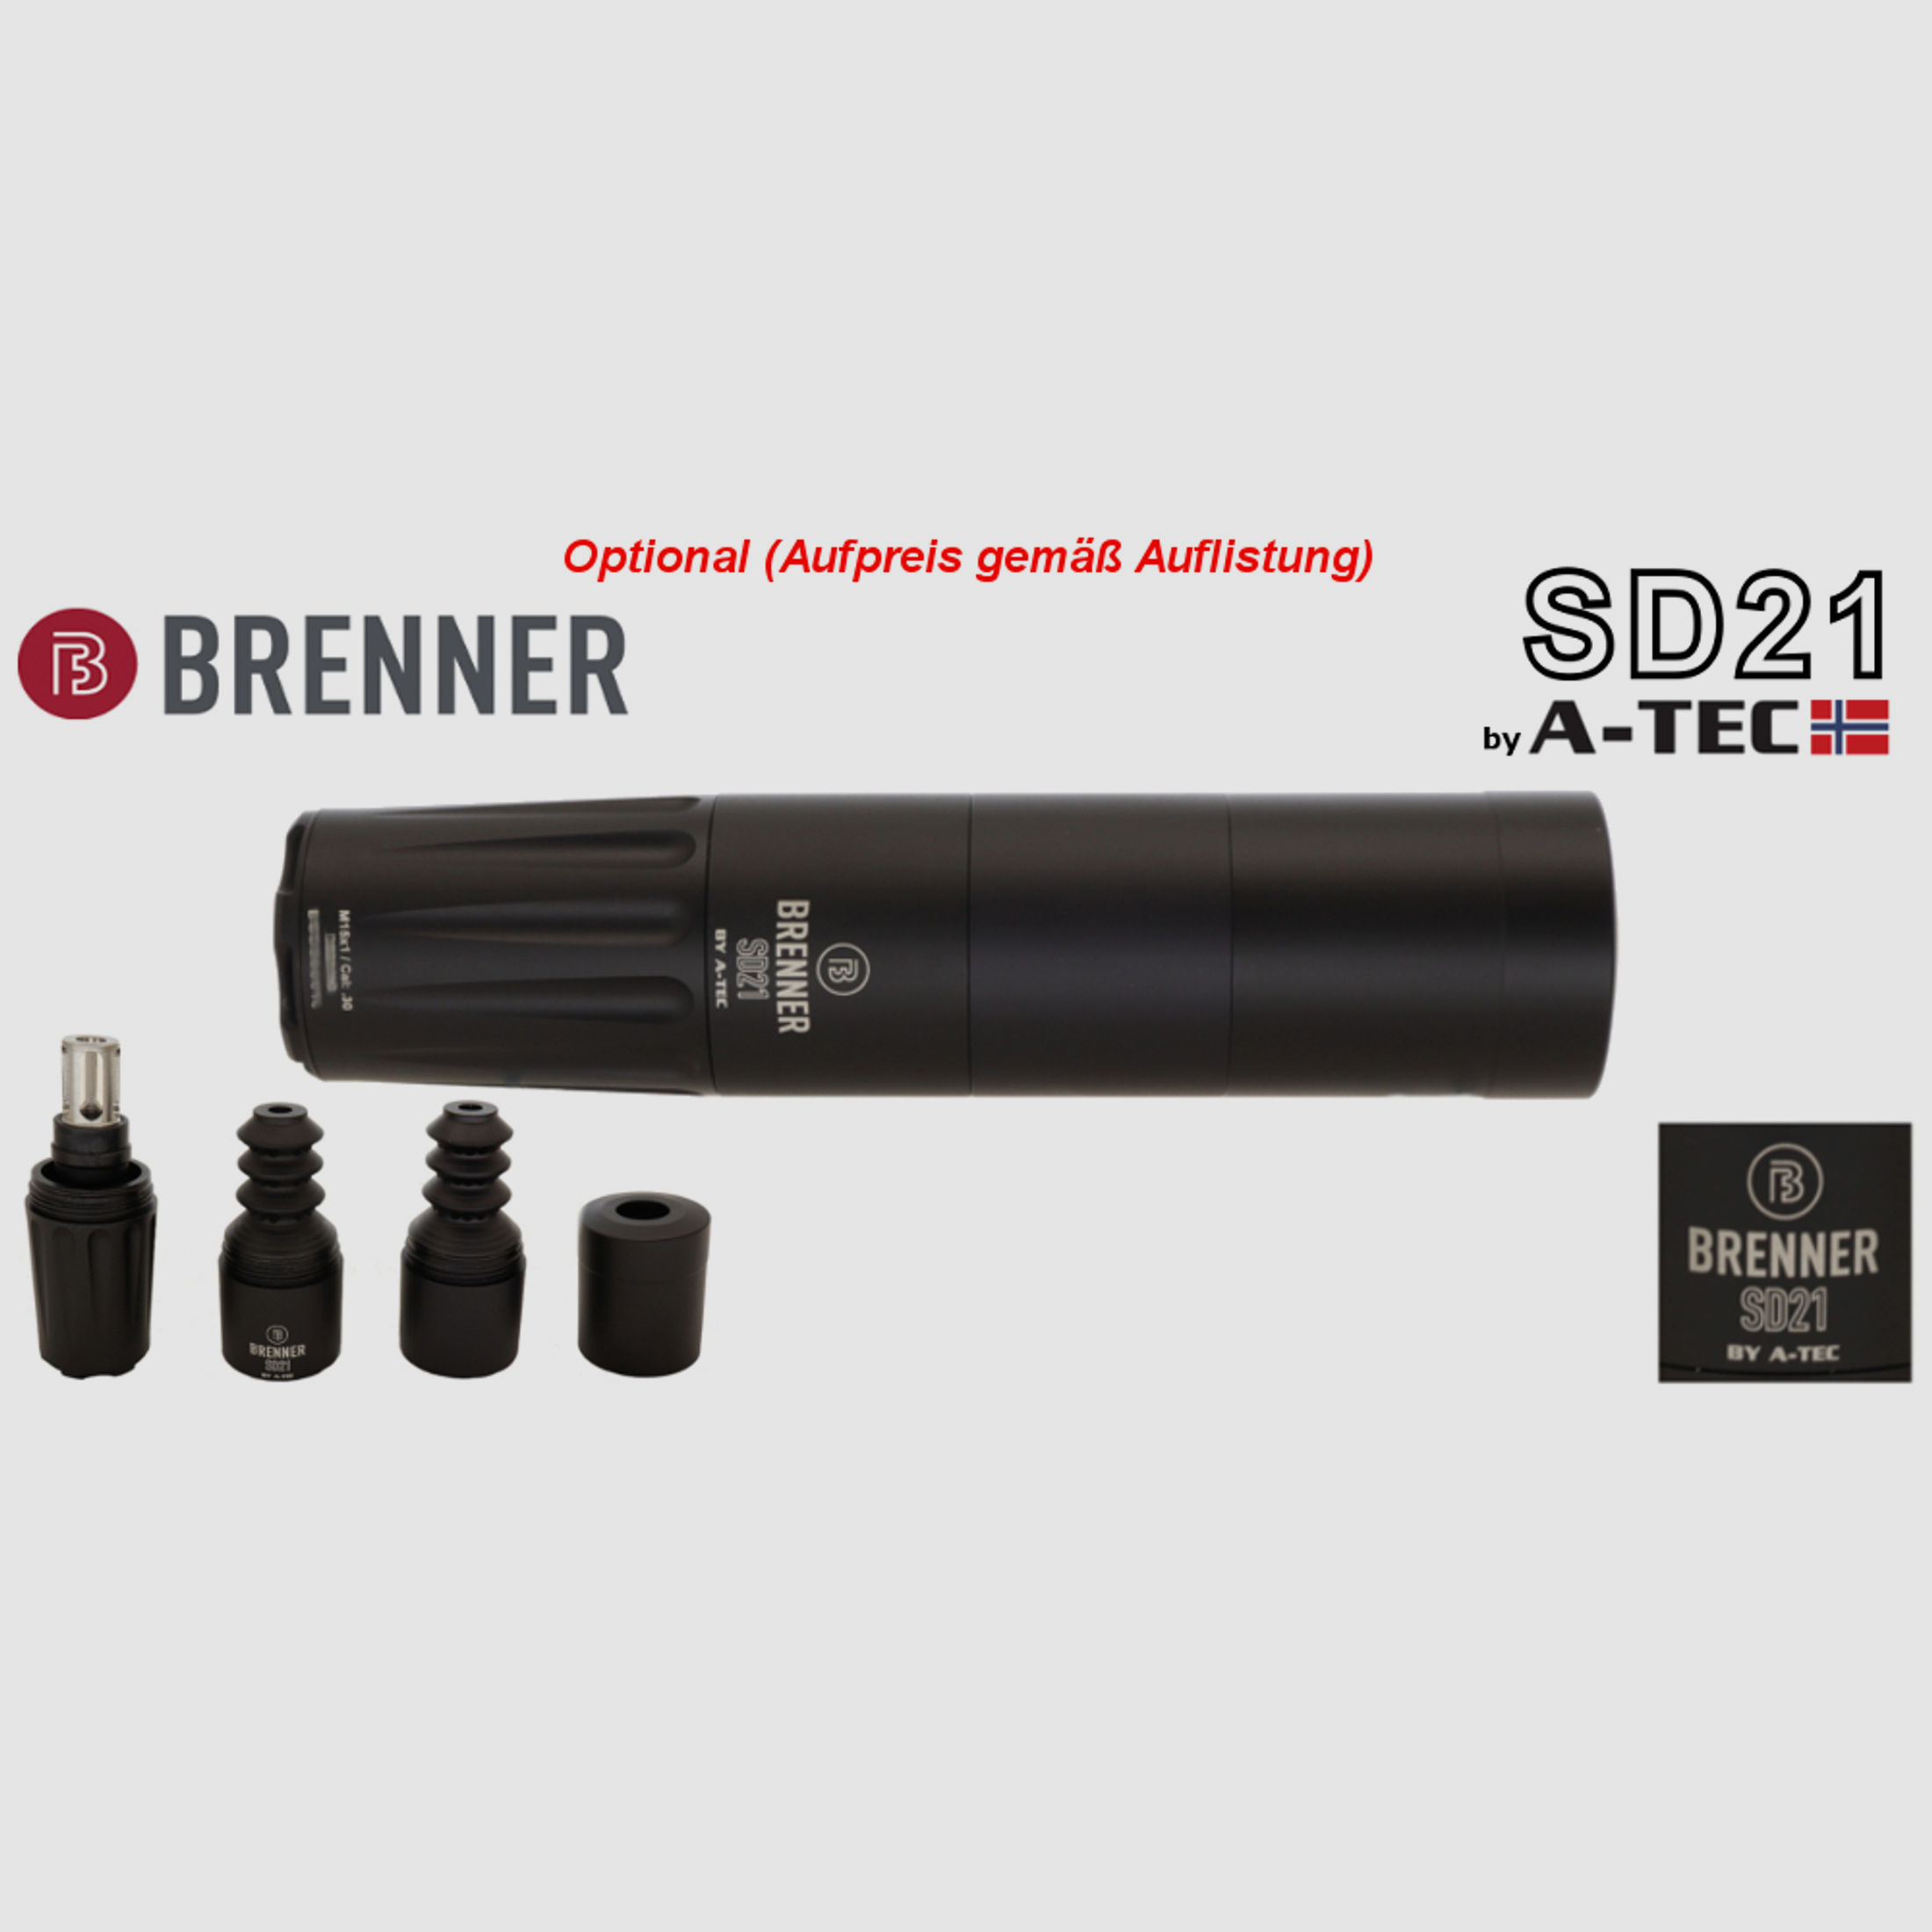 Auf Lager: Brenner BR 20 Holzschaft mit Bushnell Nitro 2.5-15x50 (Parallaxe Verstellung)  (Best.Nr.: BR20WP7) Finanzierung möglich